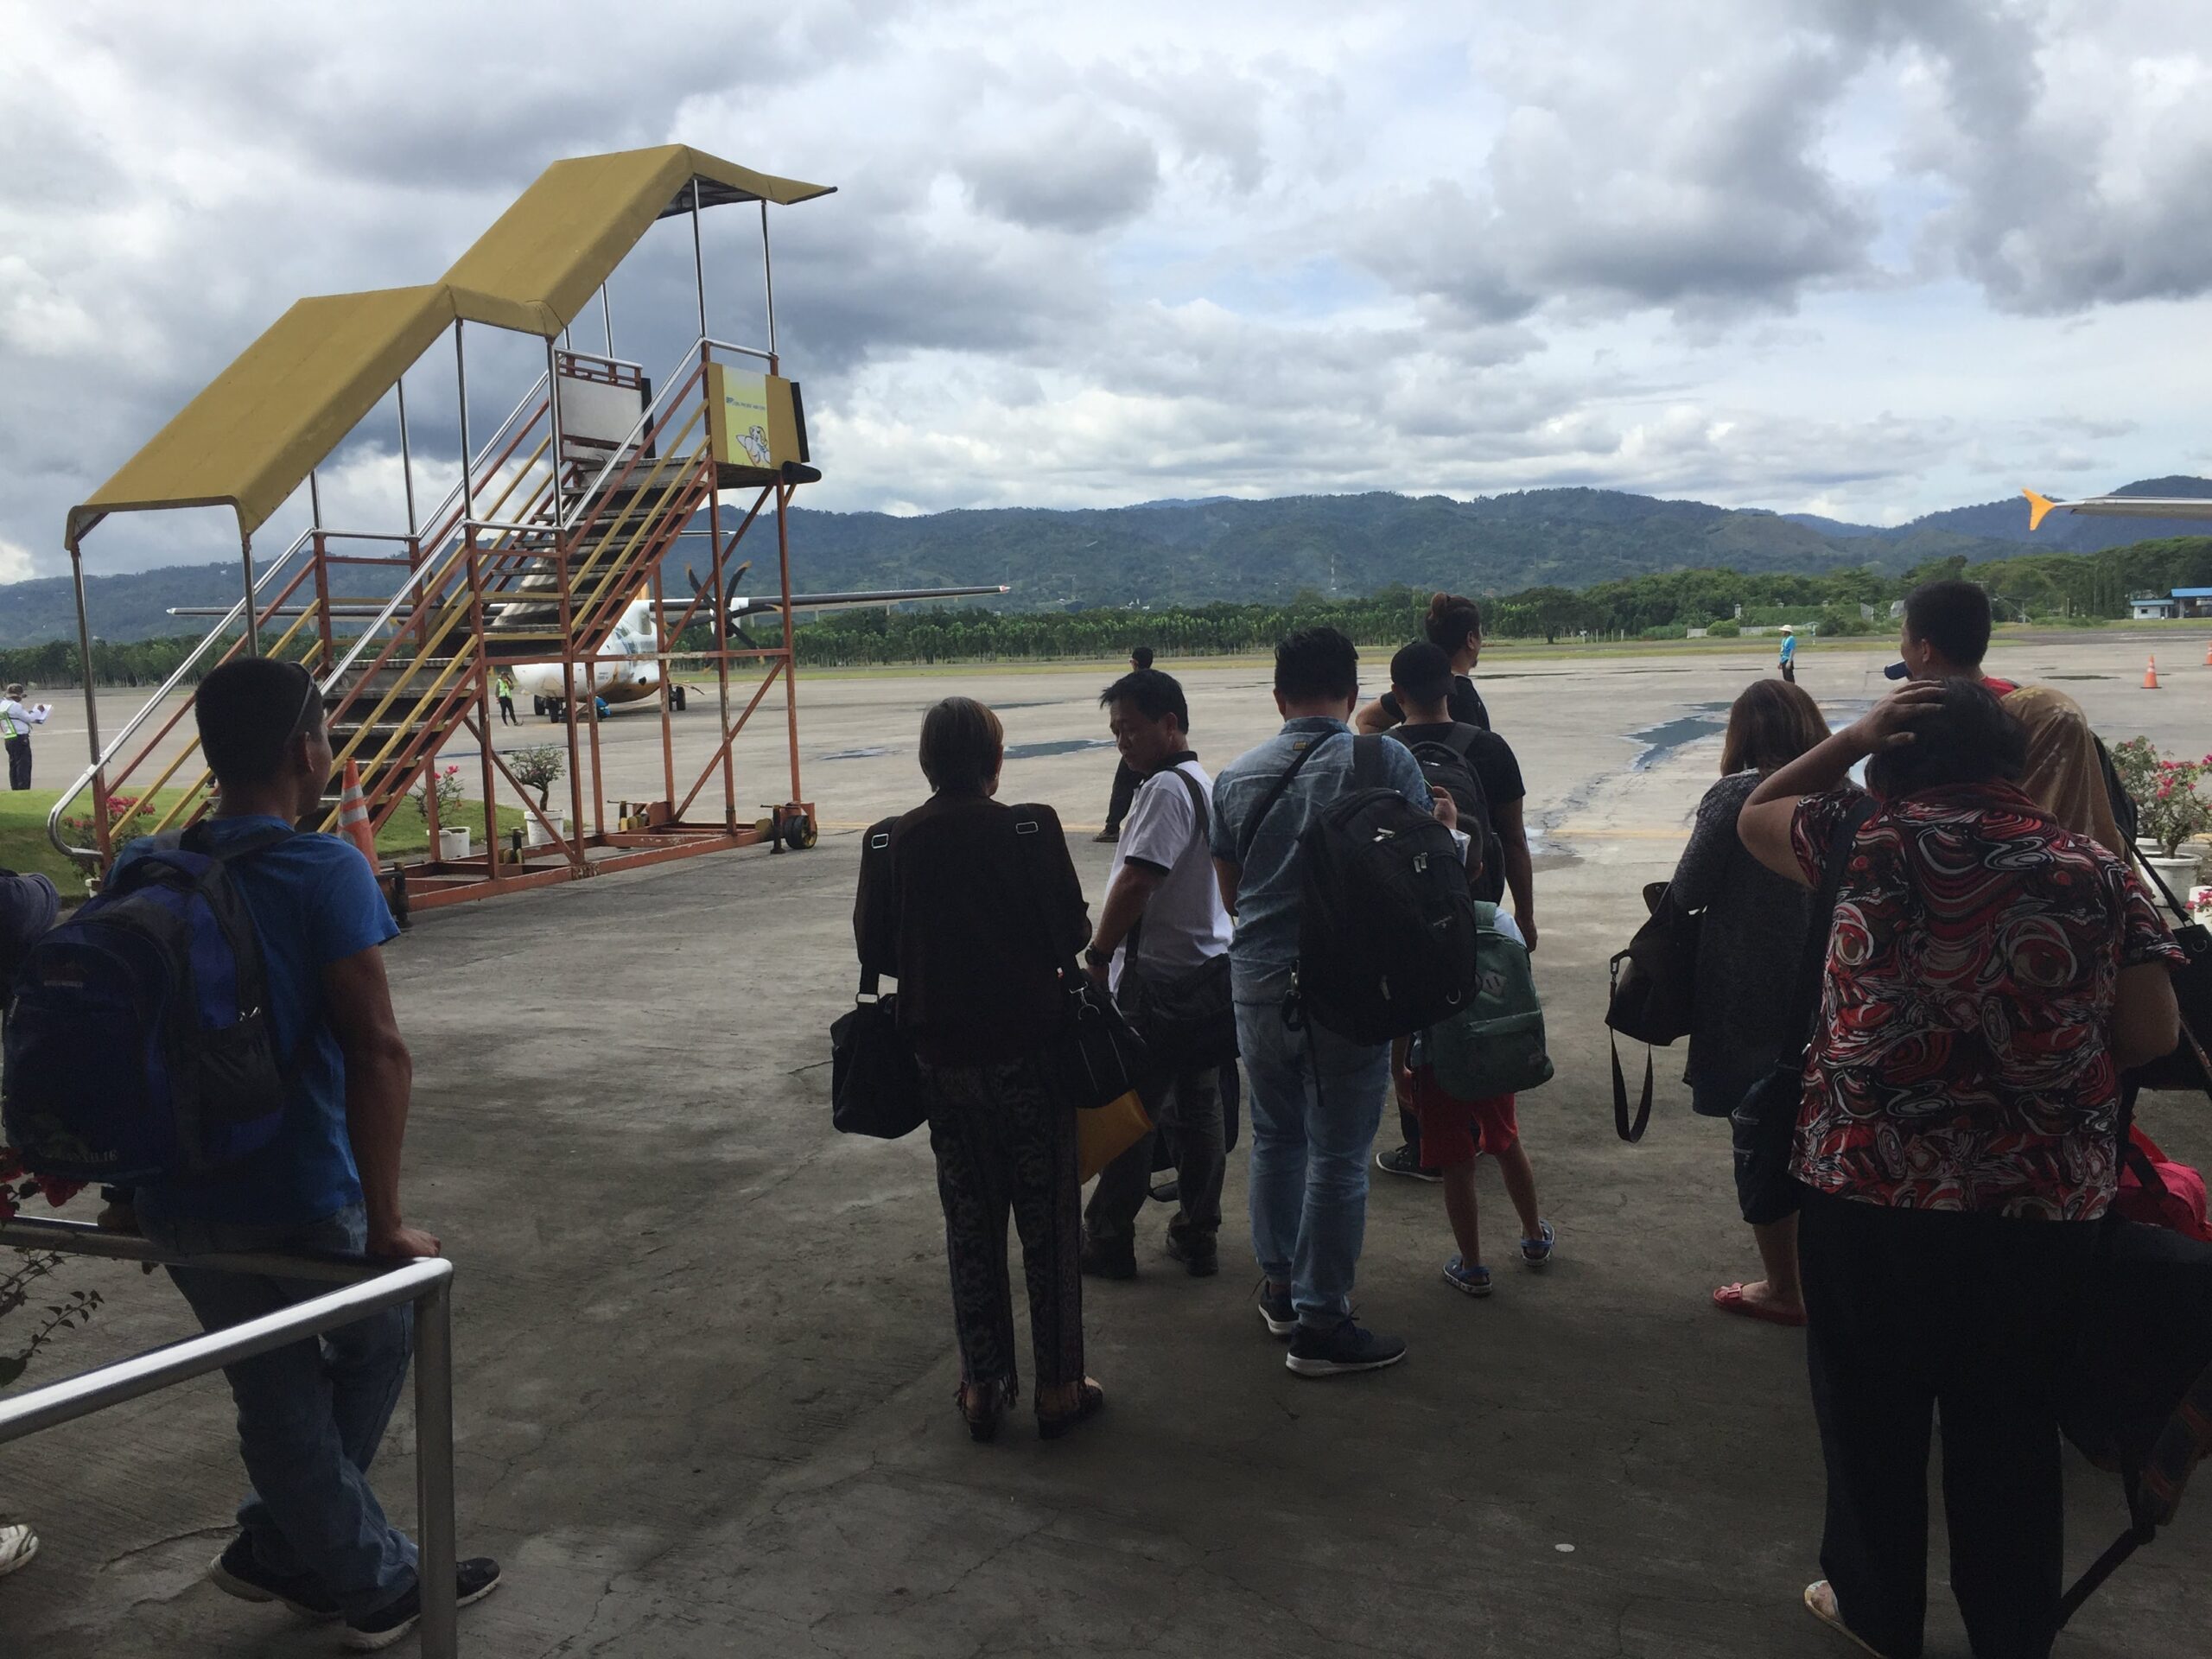 Zamboanga’s airport to be transferred in 4-5 years